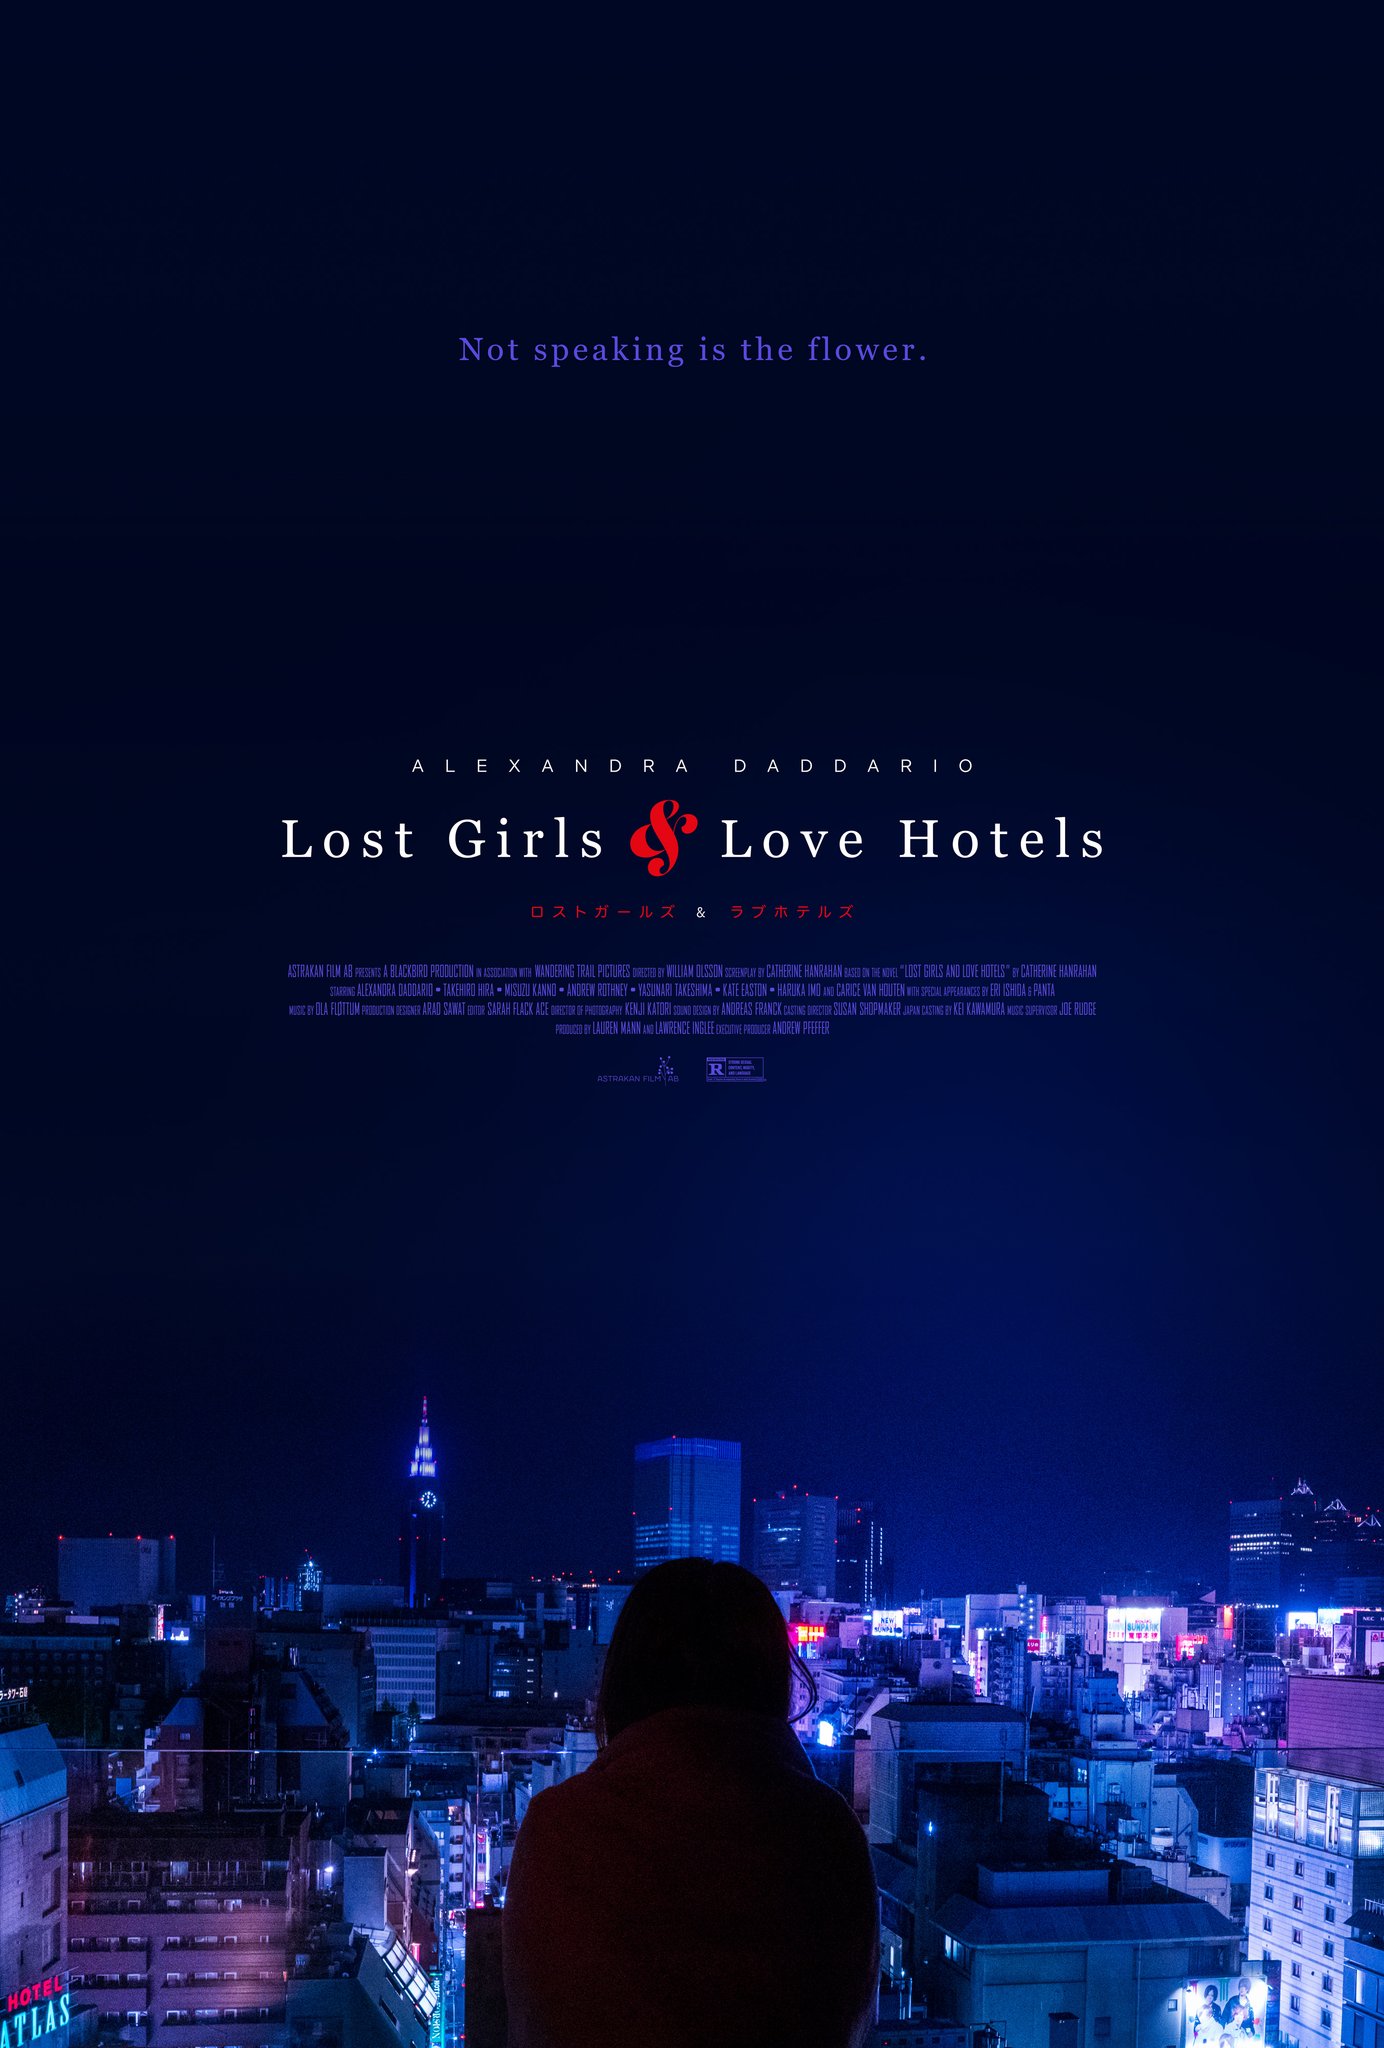 دختران گمشده و هتل های عشق (Lost Girls and Love Hotels)